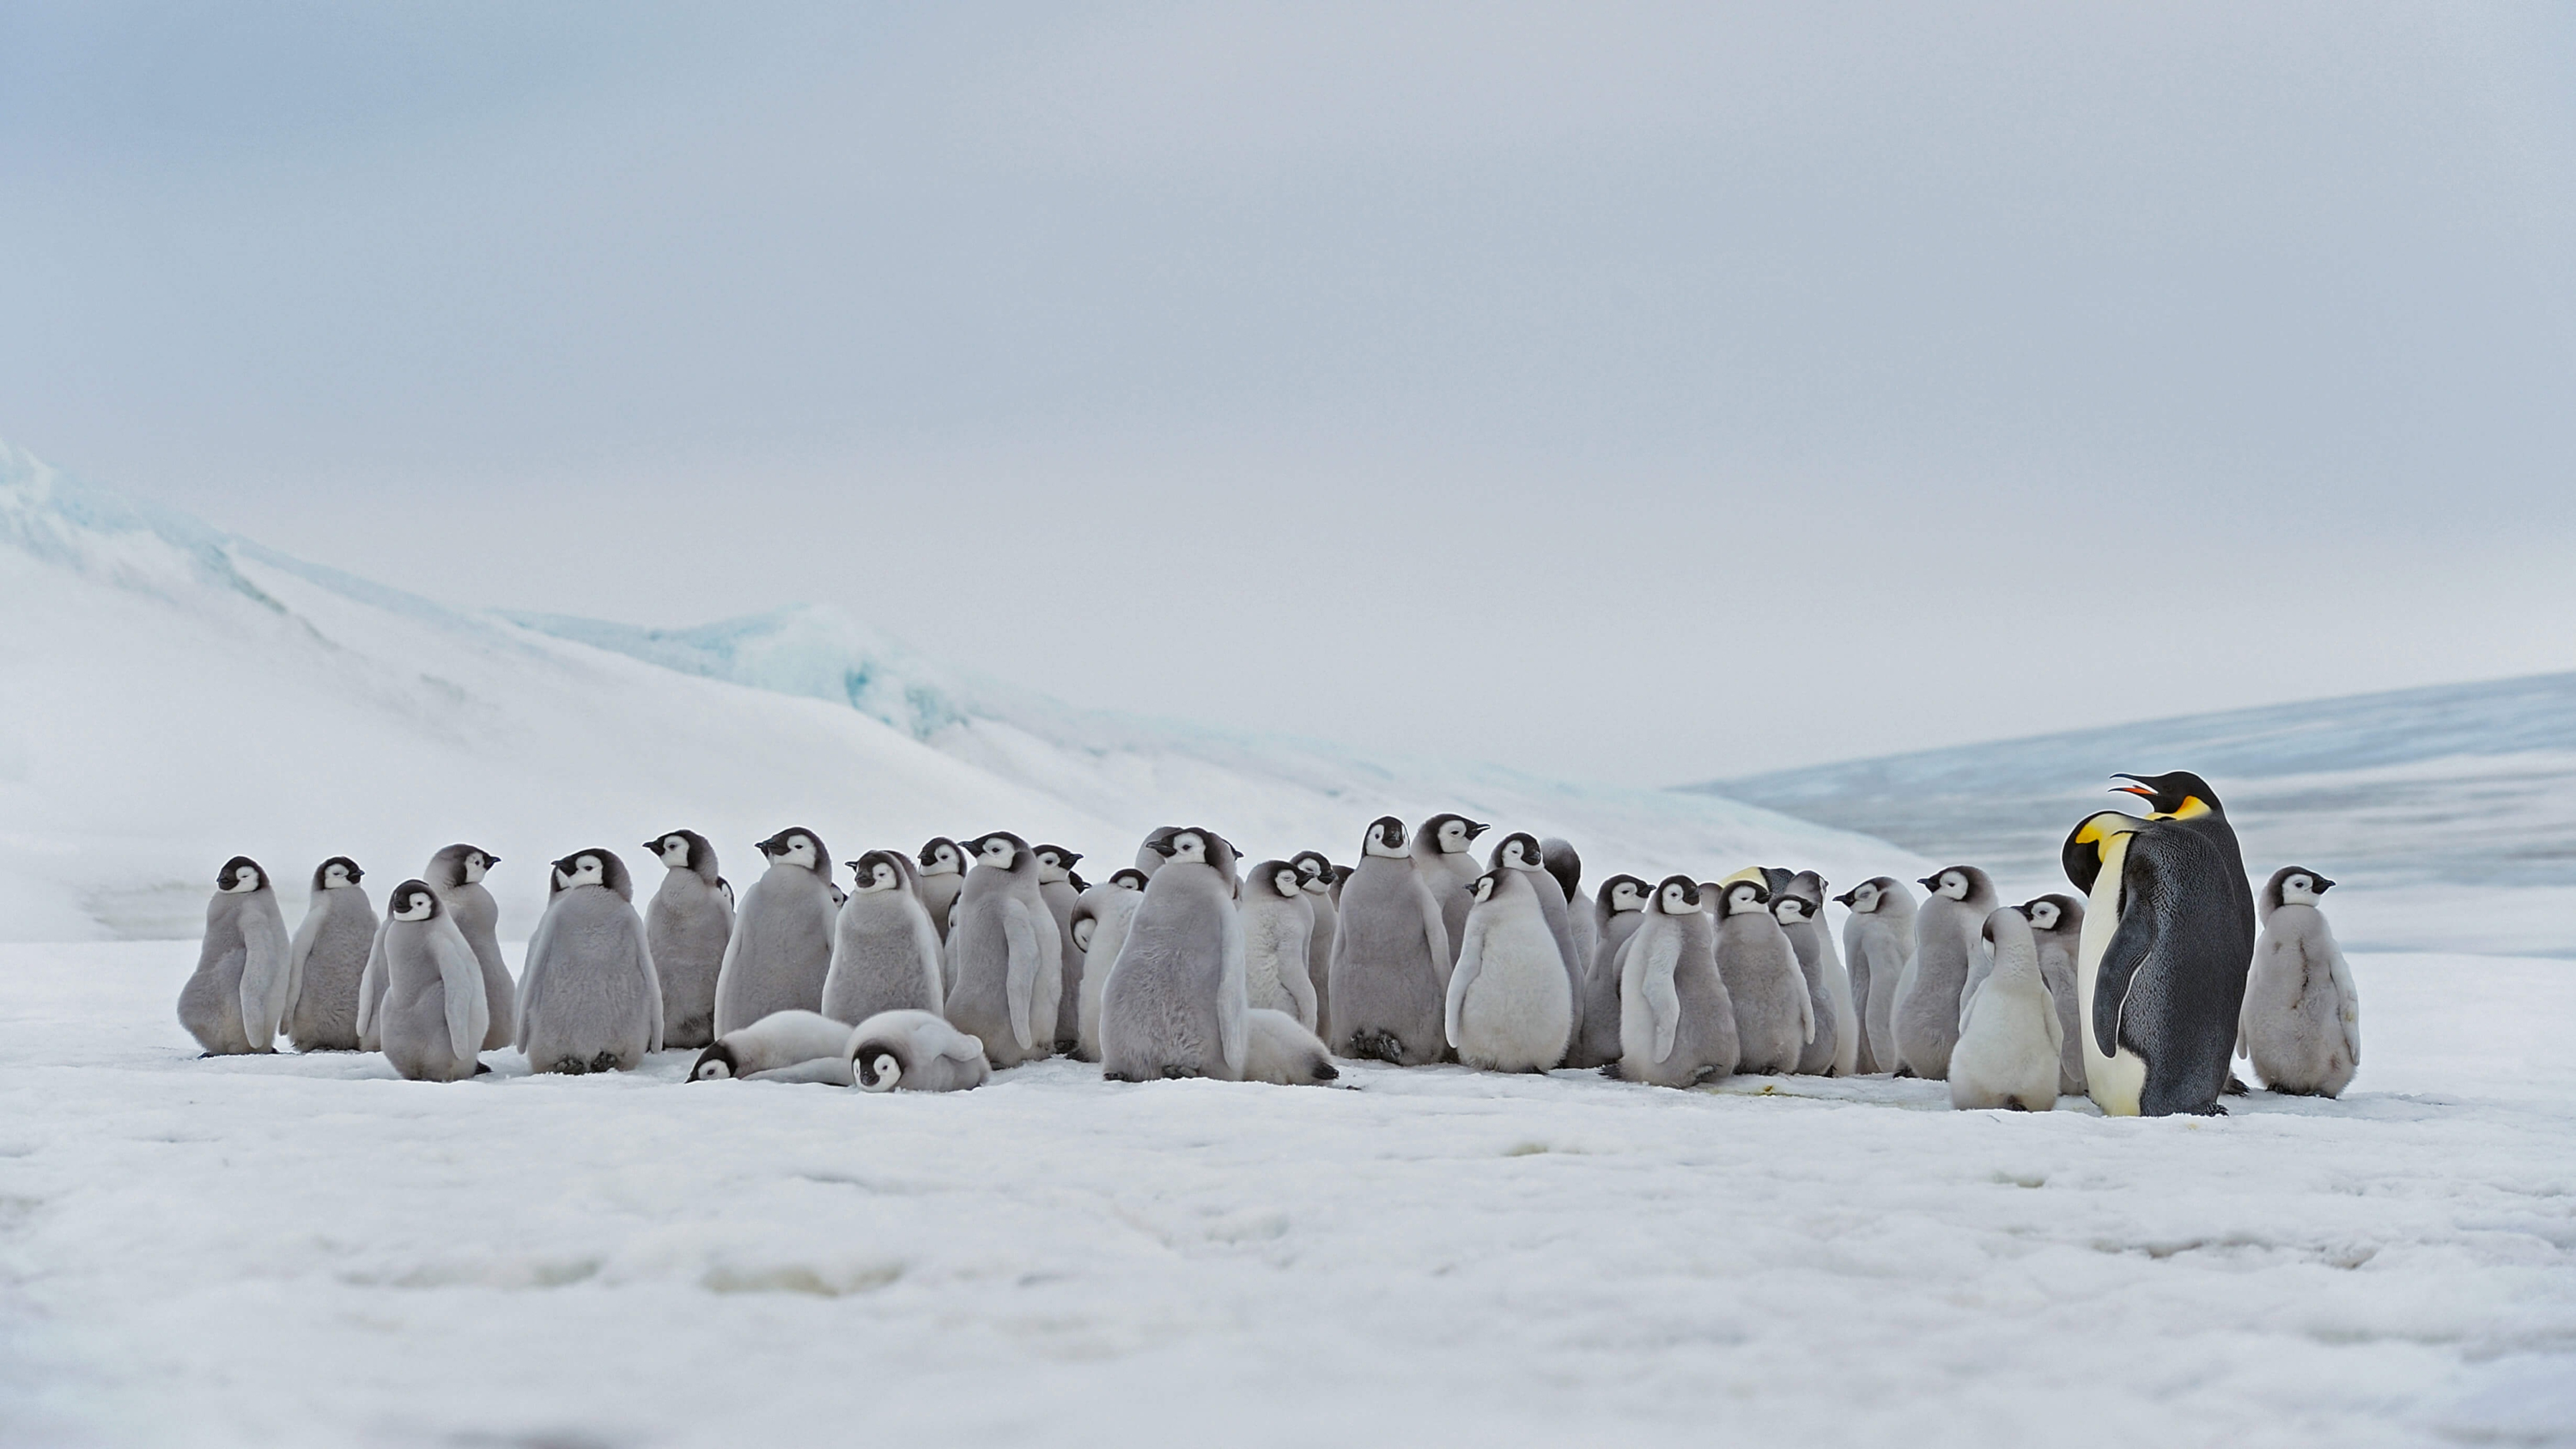 Free download wallpaper Birds, Animal, Antarctica, Penguin, Emperor Penguin on your PC desktop